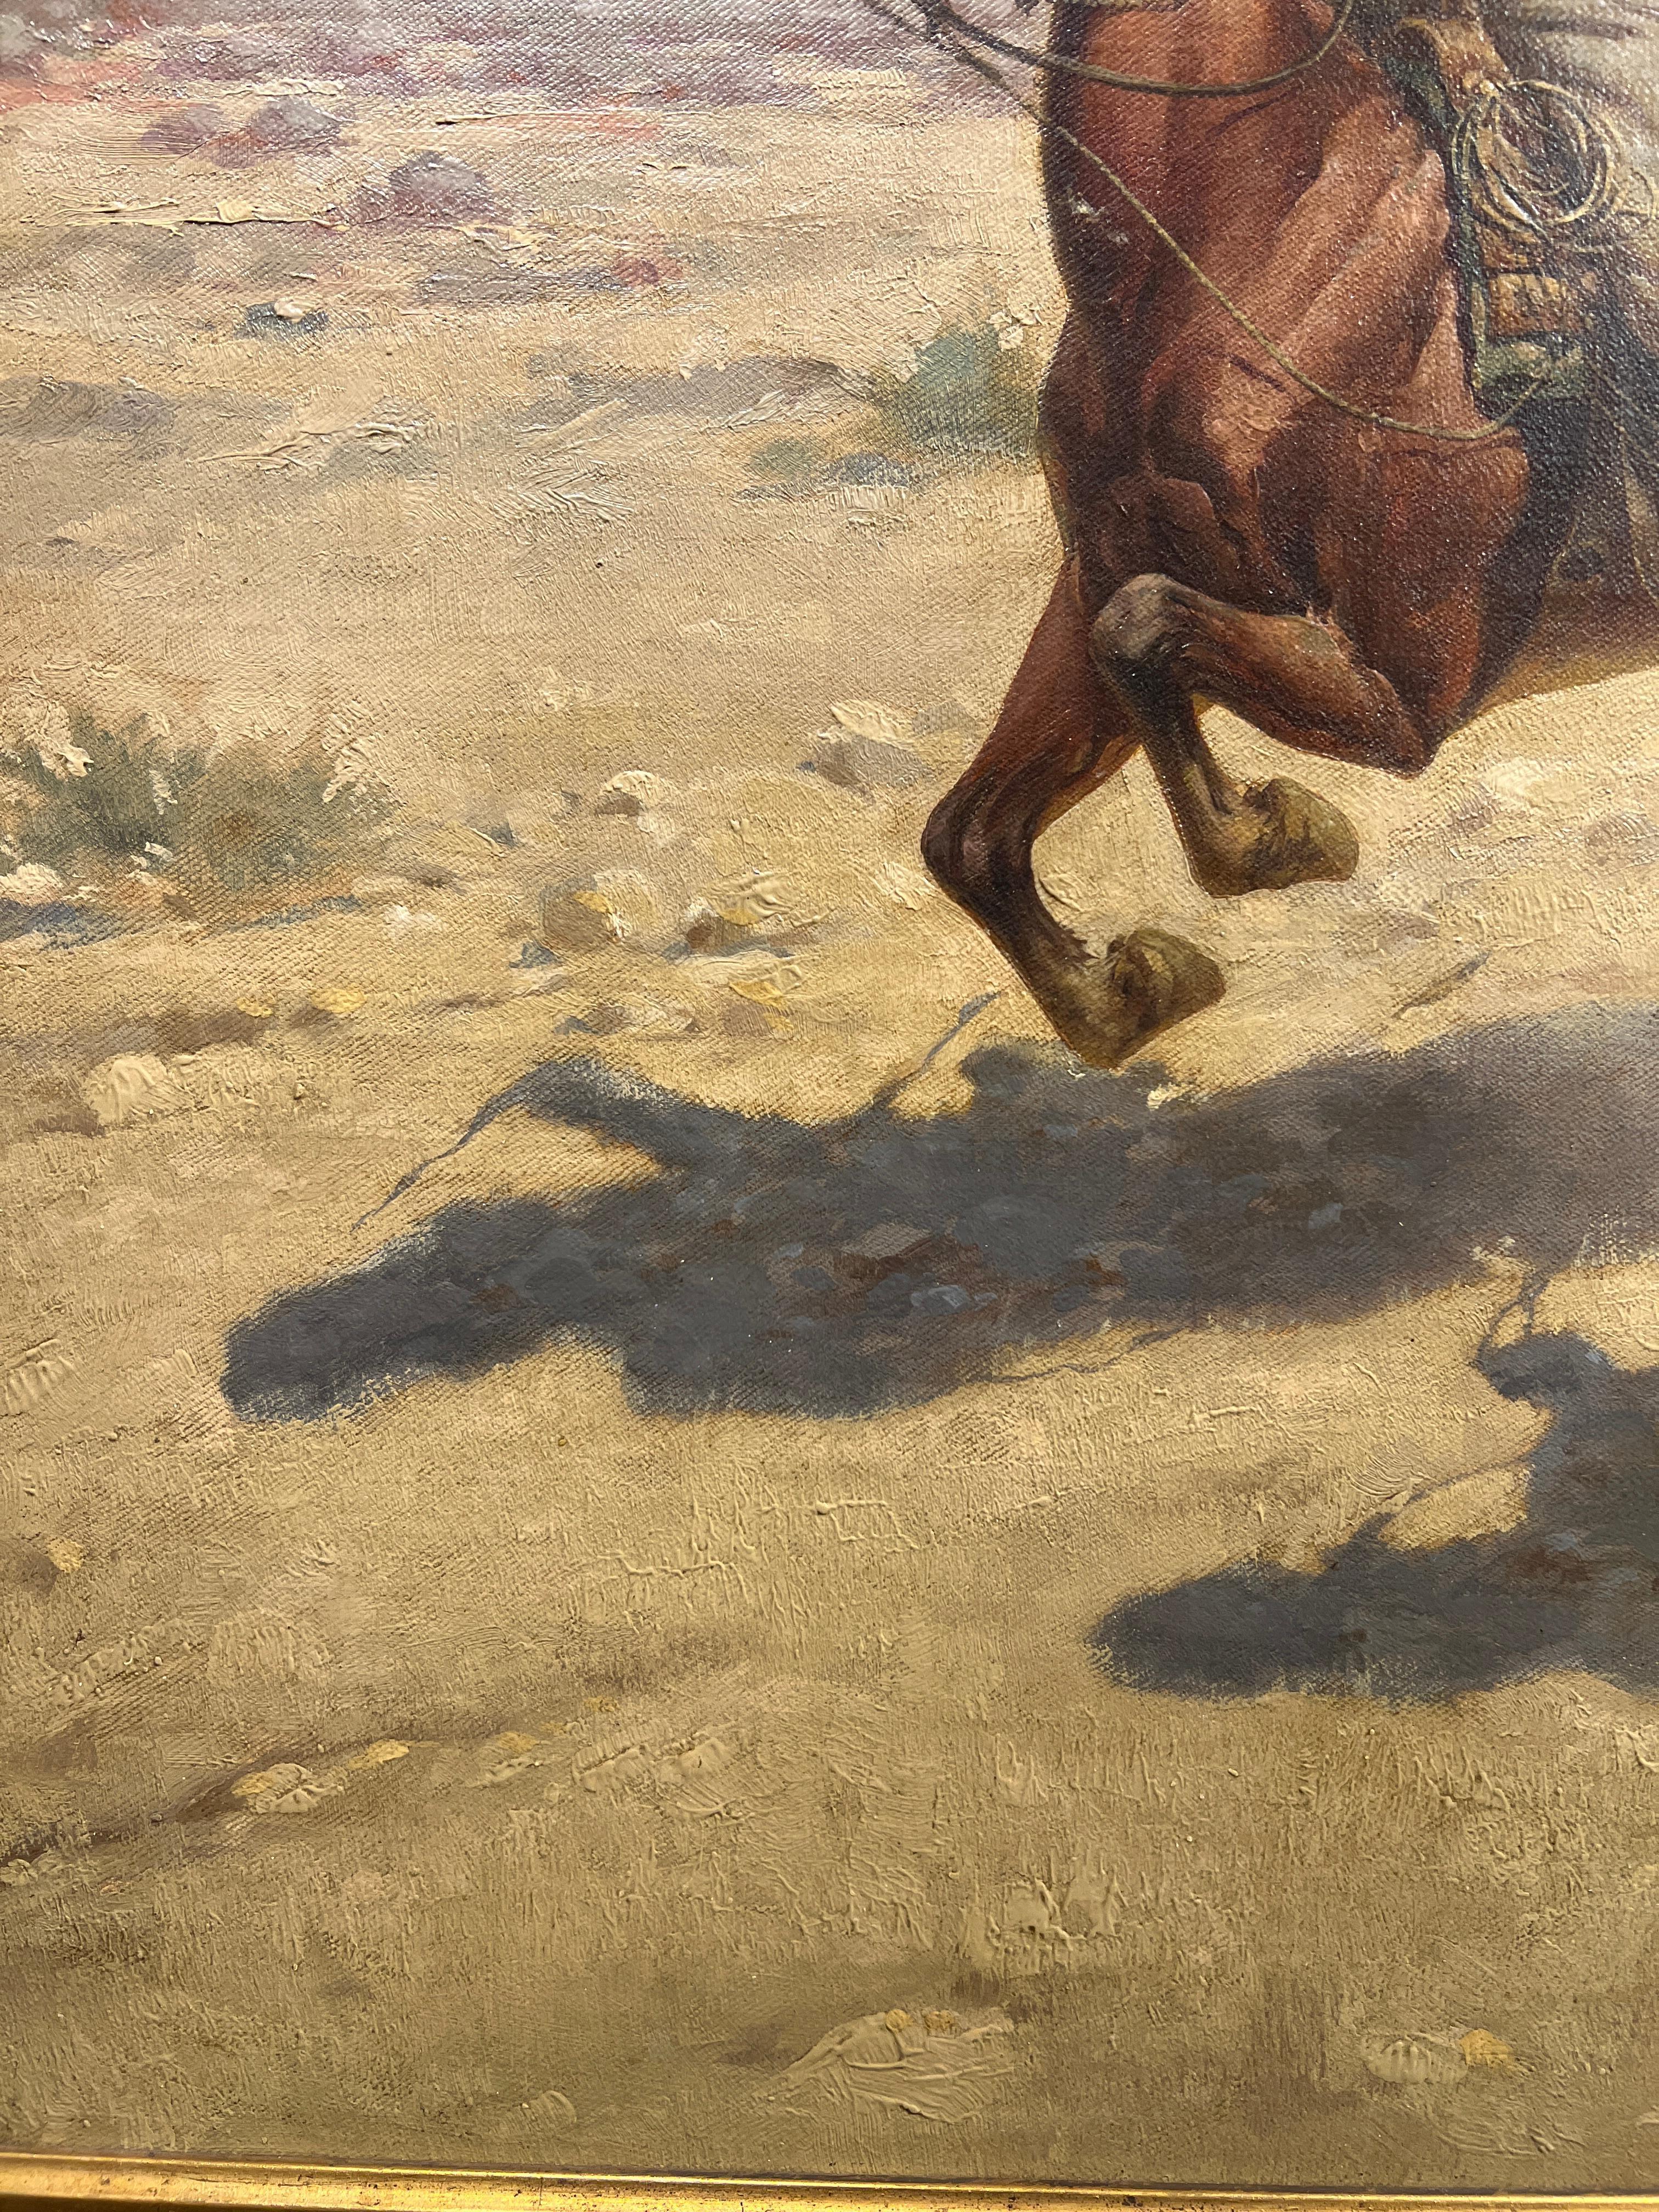 Herman Hanson (Deutscher, 1854-1924)
Cowboy-Rennen, 1905
Signiert und datiert unten rechts
24 x 36 Zoll
37 x 49 Zoll

Der in Dithmarschen geborene Herman Hansen schuf akribische Aquarelle, die vergangene Tage des Alten Westens, seine Pferde, Cowboys